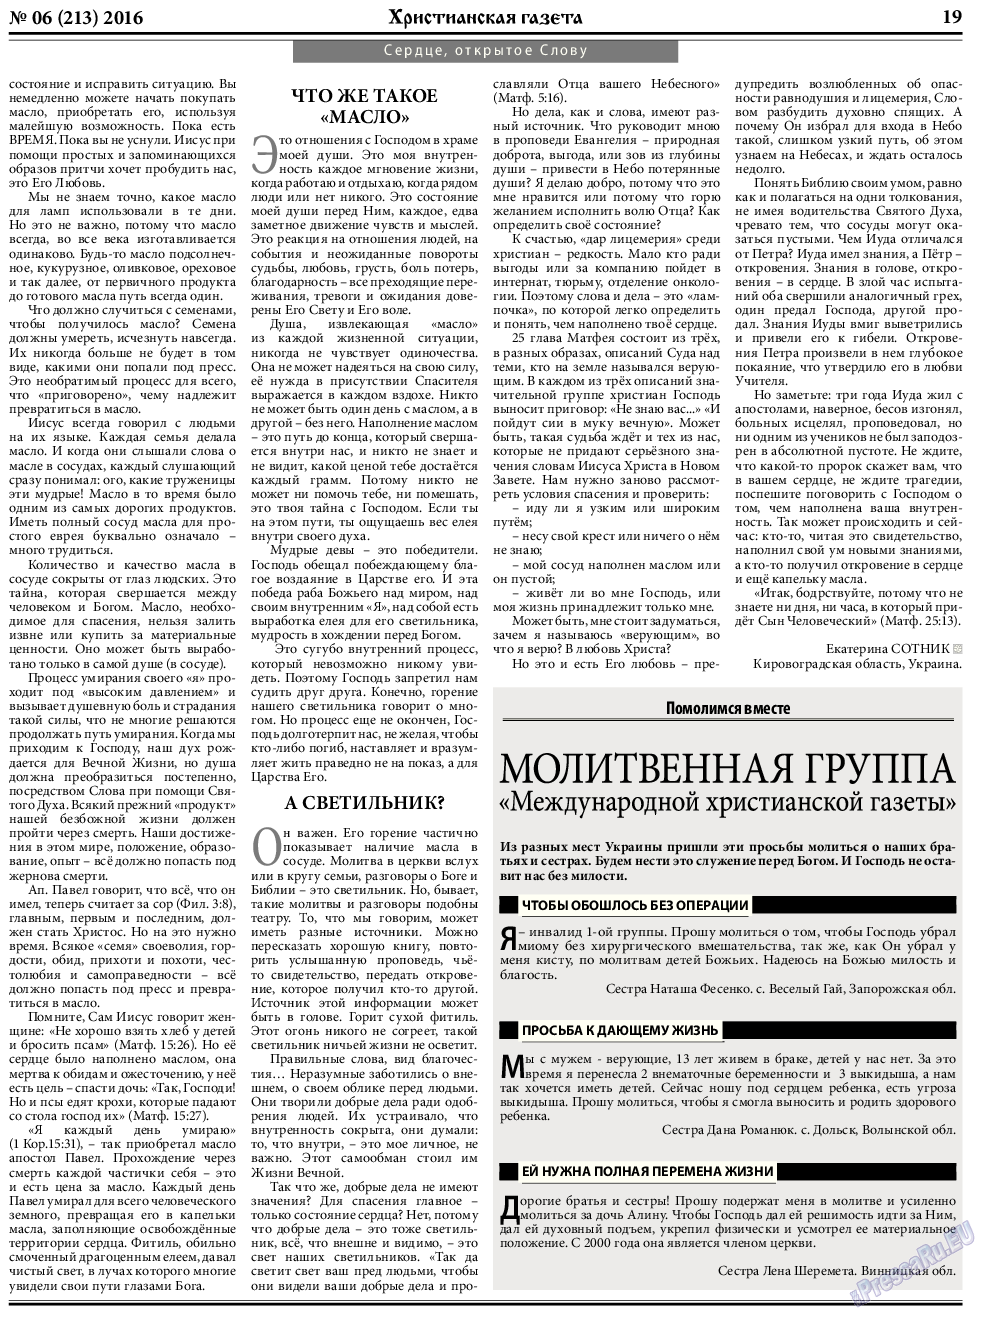 Христианская газета, газета. 2016 №6 стр.27